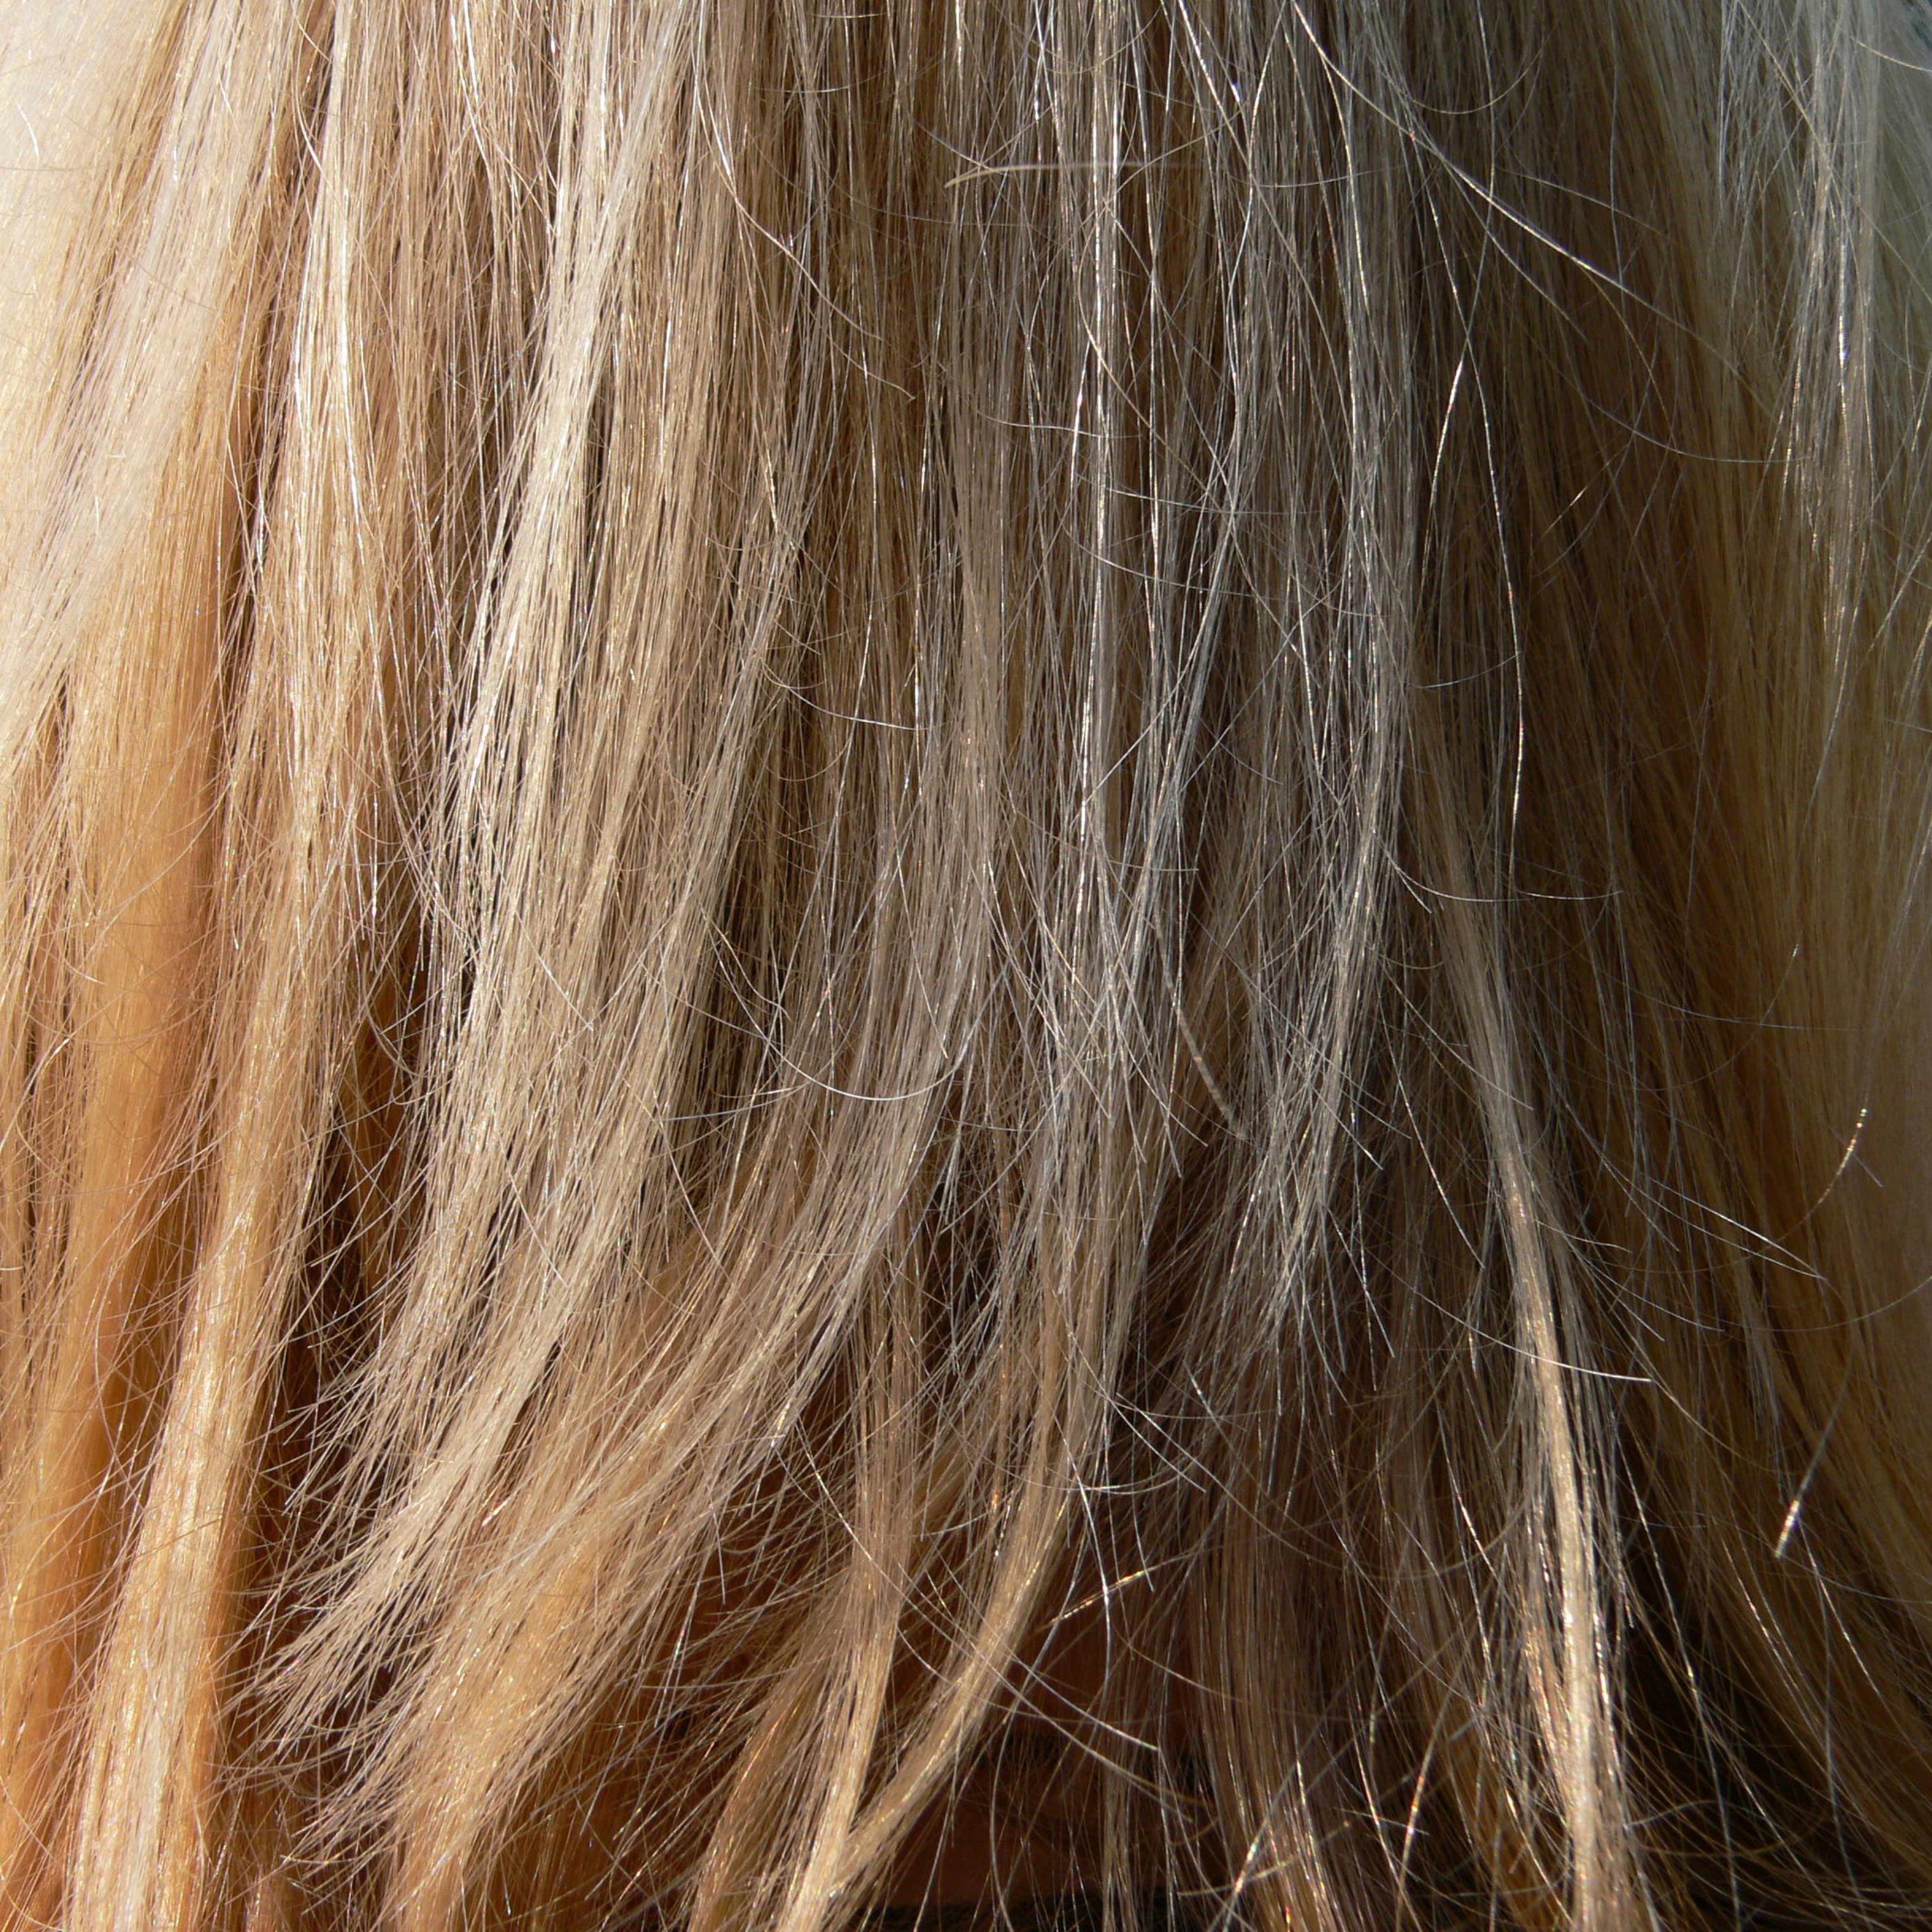 Prova aquests 6 remeis si tens els cabells secs